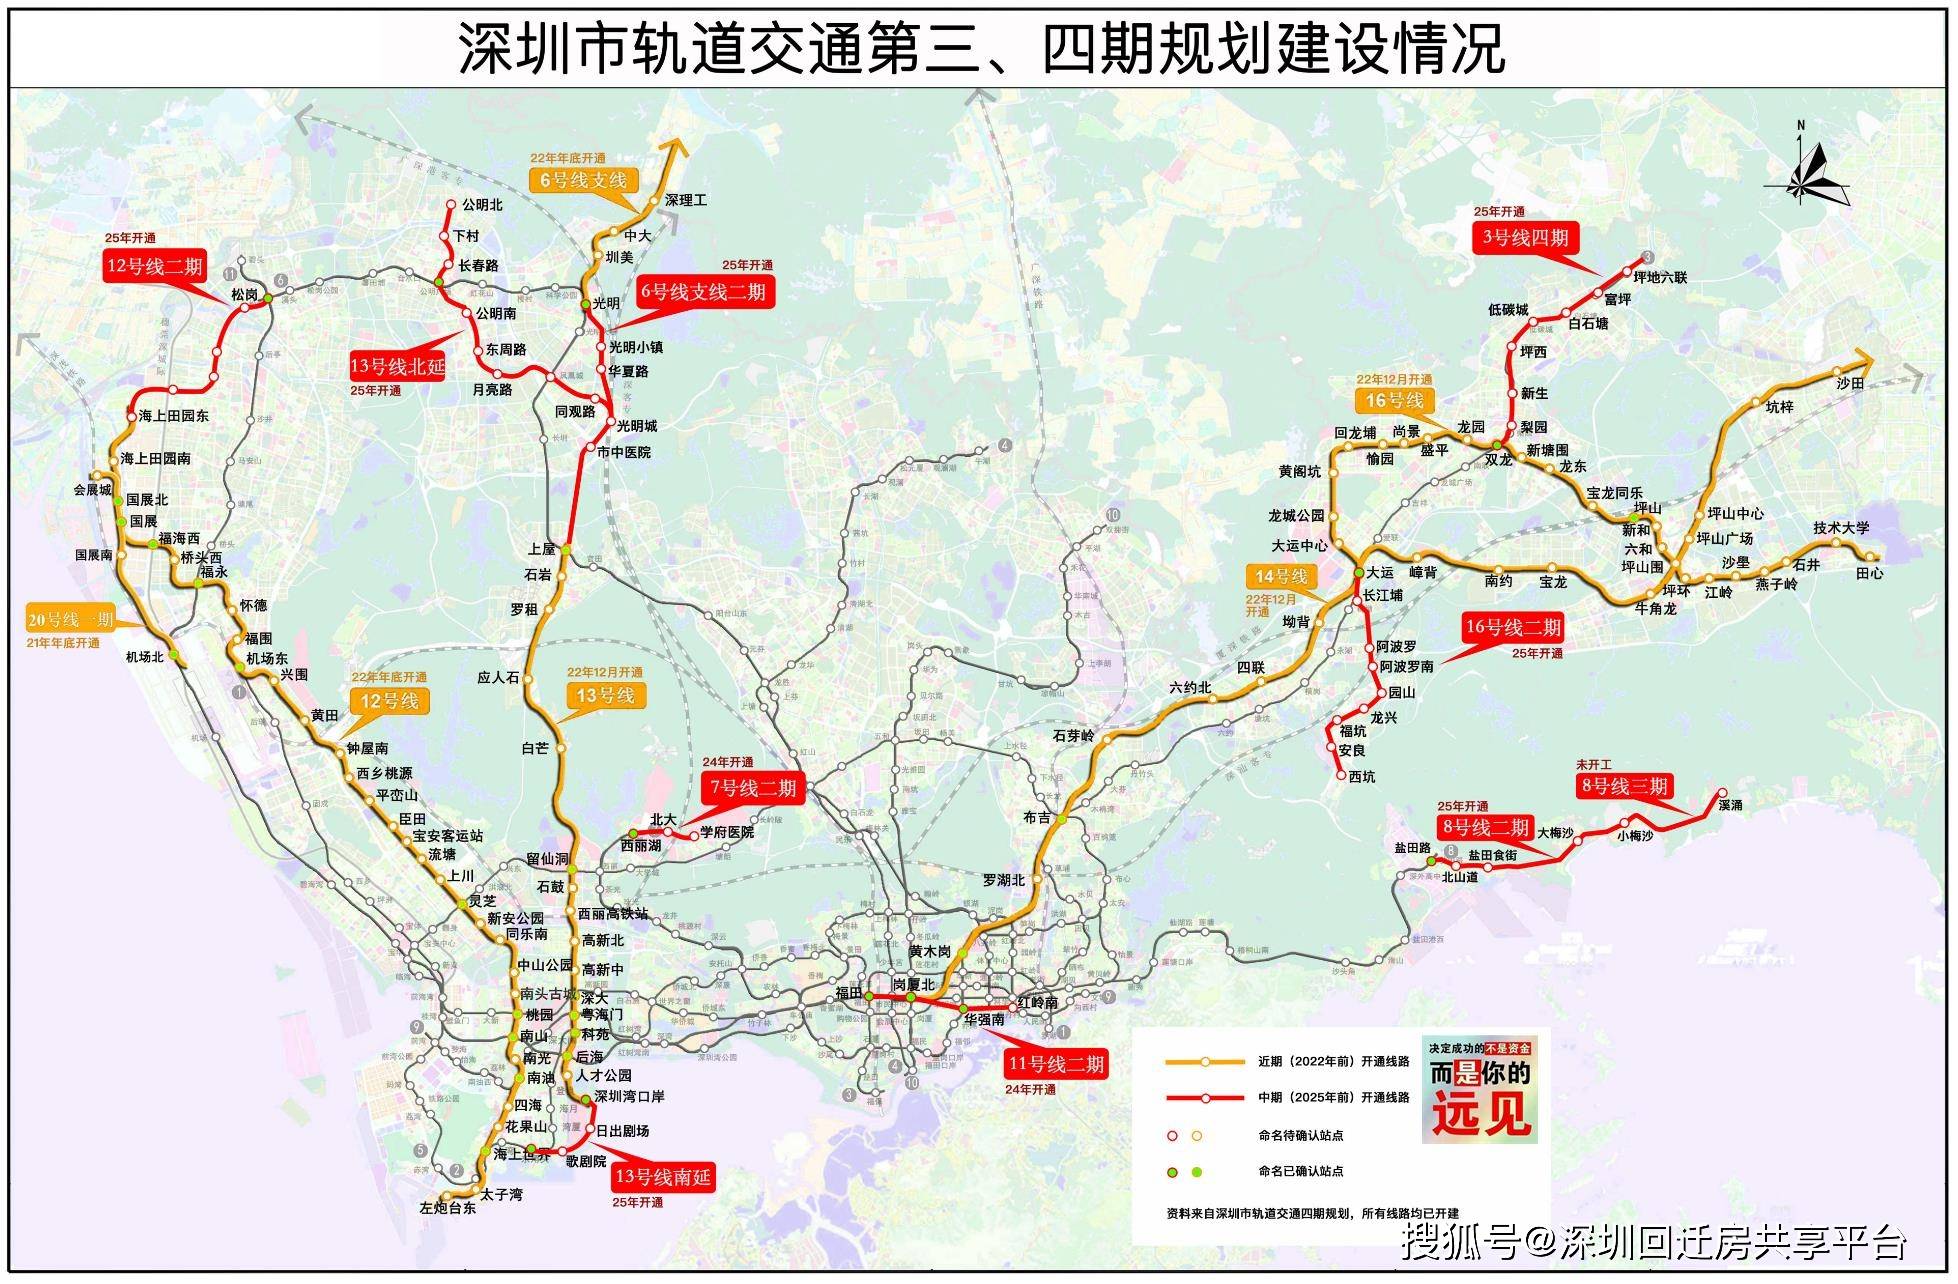 1,深圳地铁2025前瞻